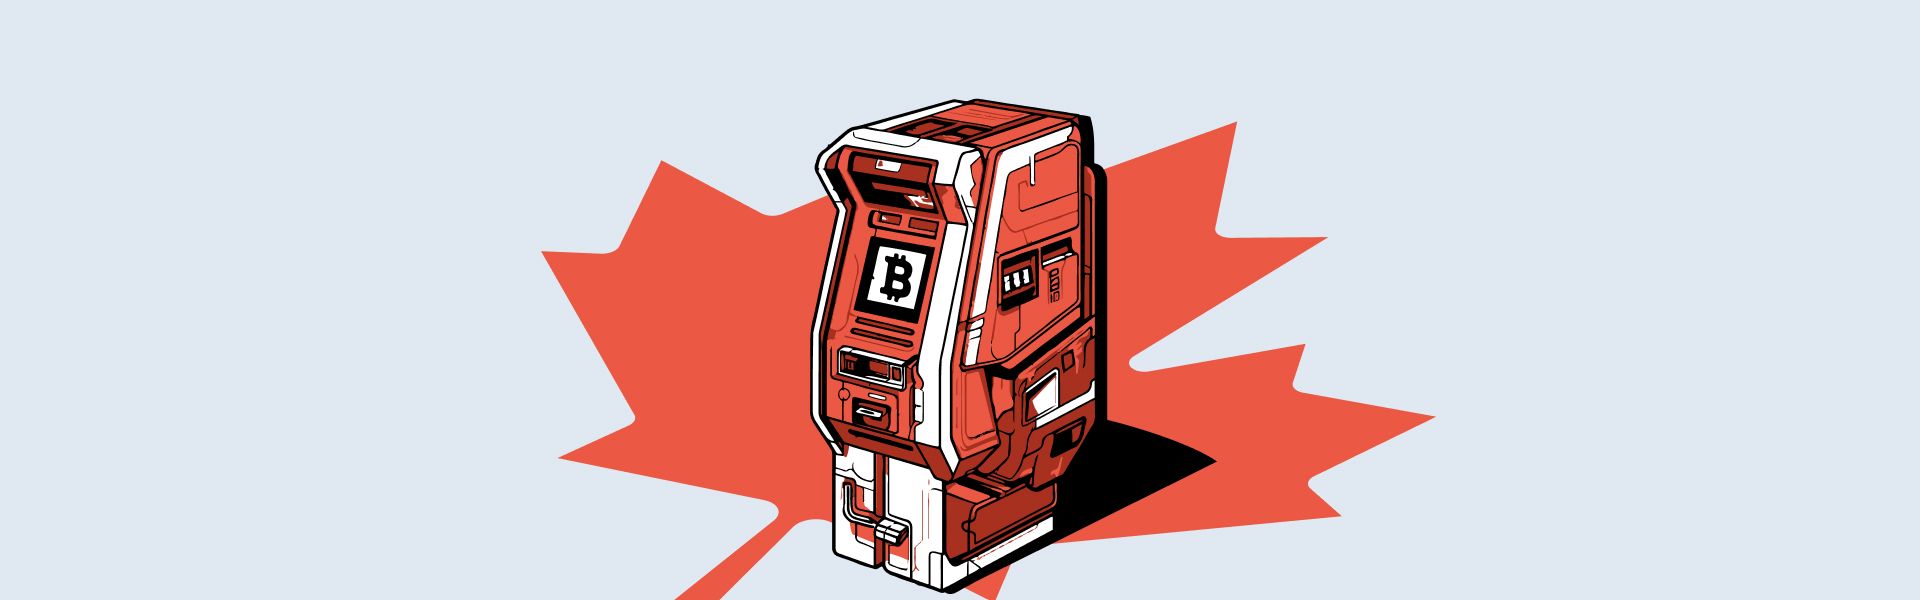 У Канаді користувачам біткоїн-банкоматів будуть доступні нові послуги